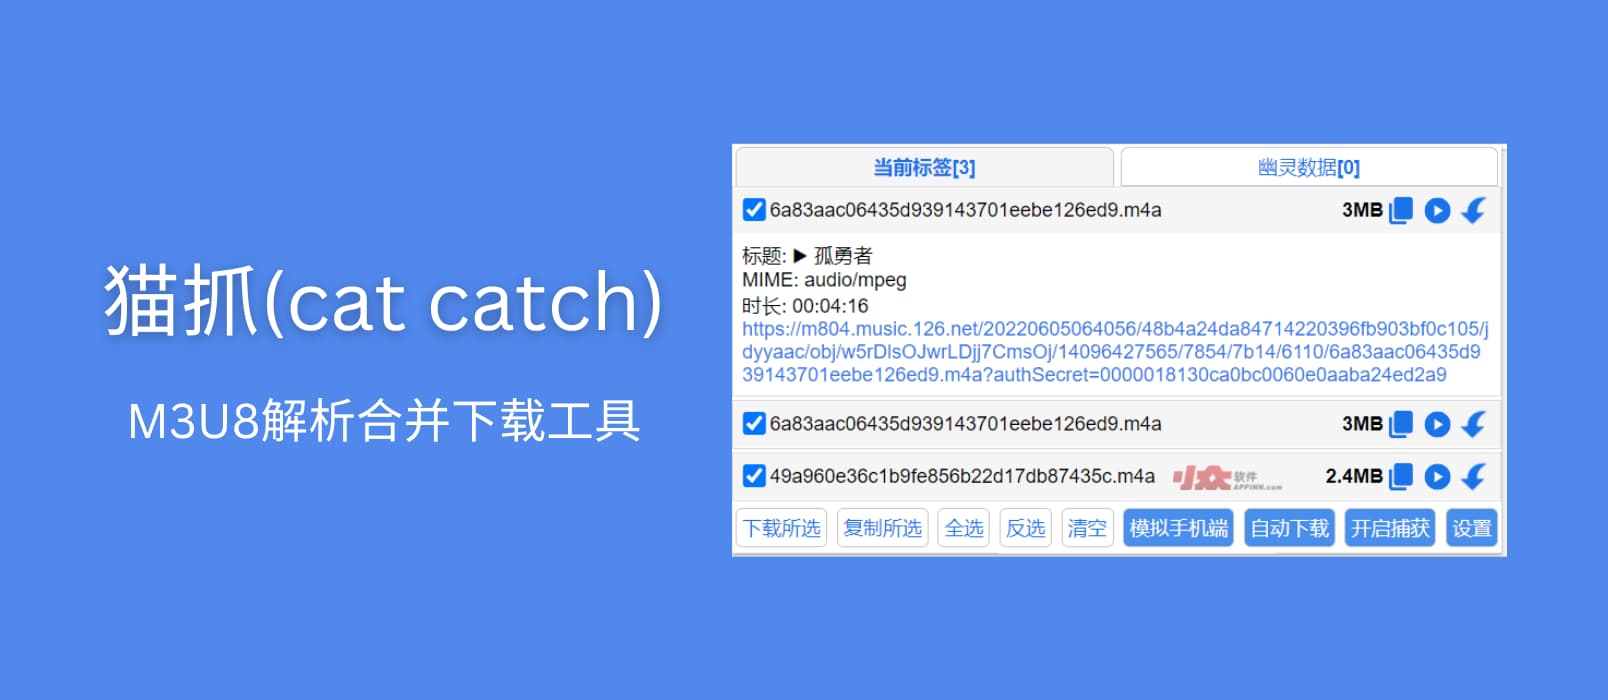 猫抓 Cat Catch – 抓取网页视频，M3U8 解析下载合并工具[Chrome／Firefox]